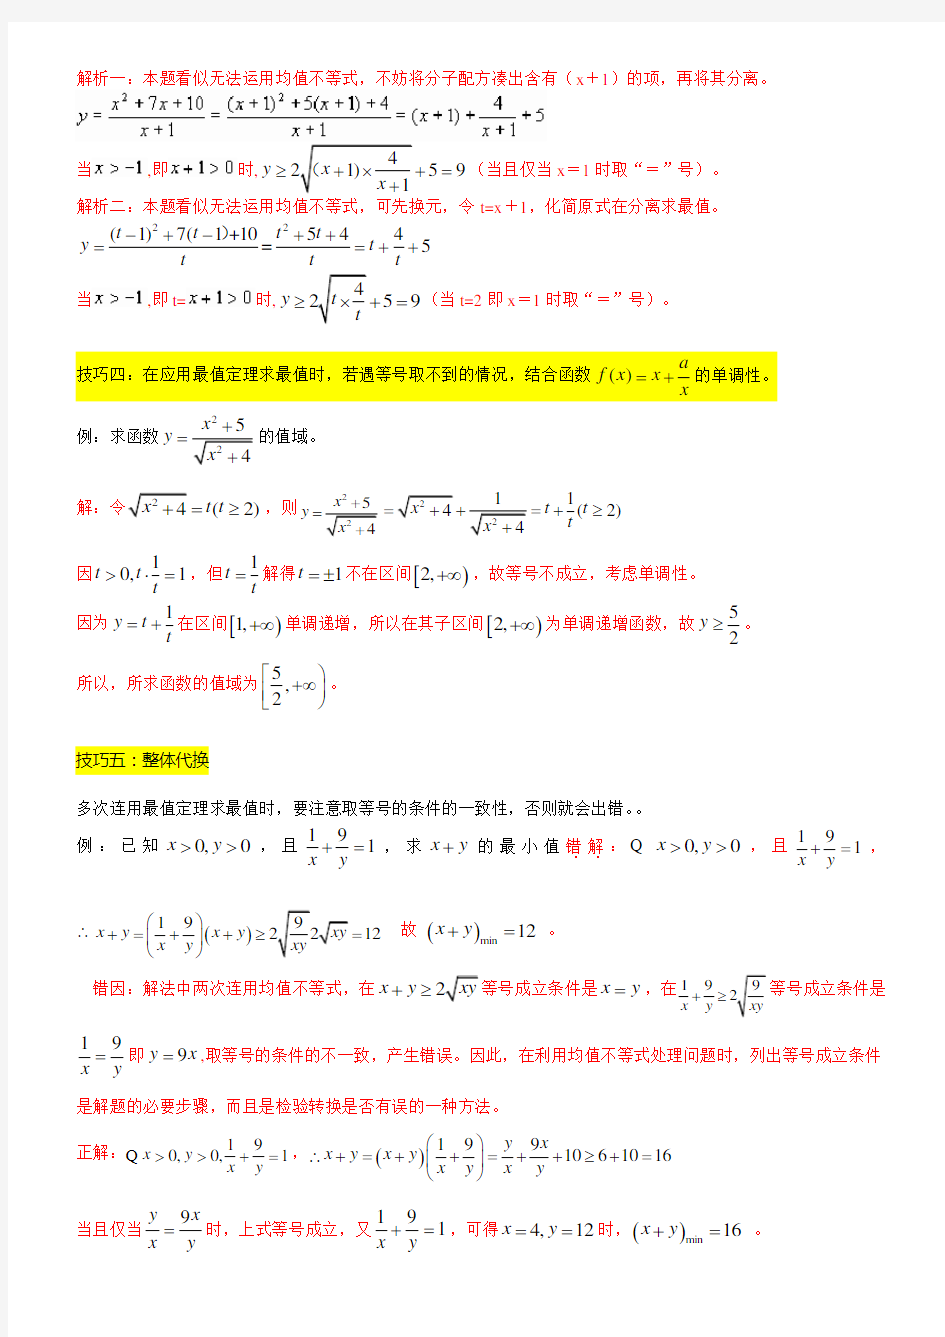 高三数学—不等式1基本不等式经典例题高考真题剖析(解析版)